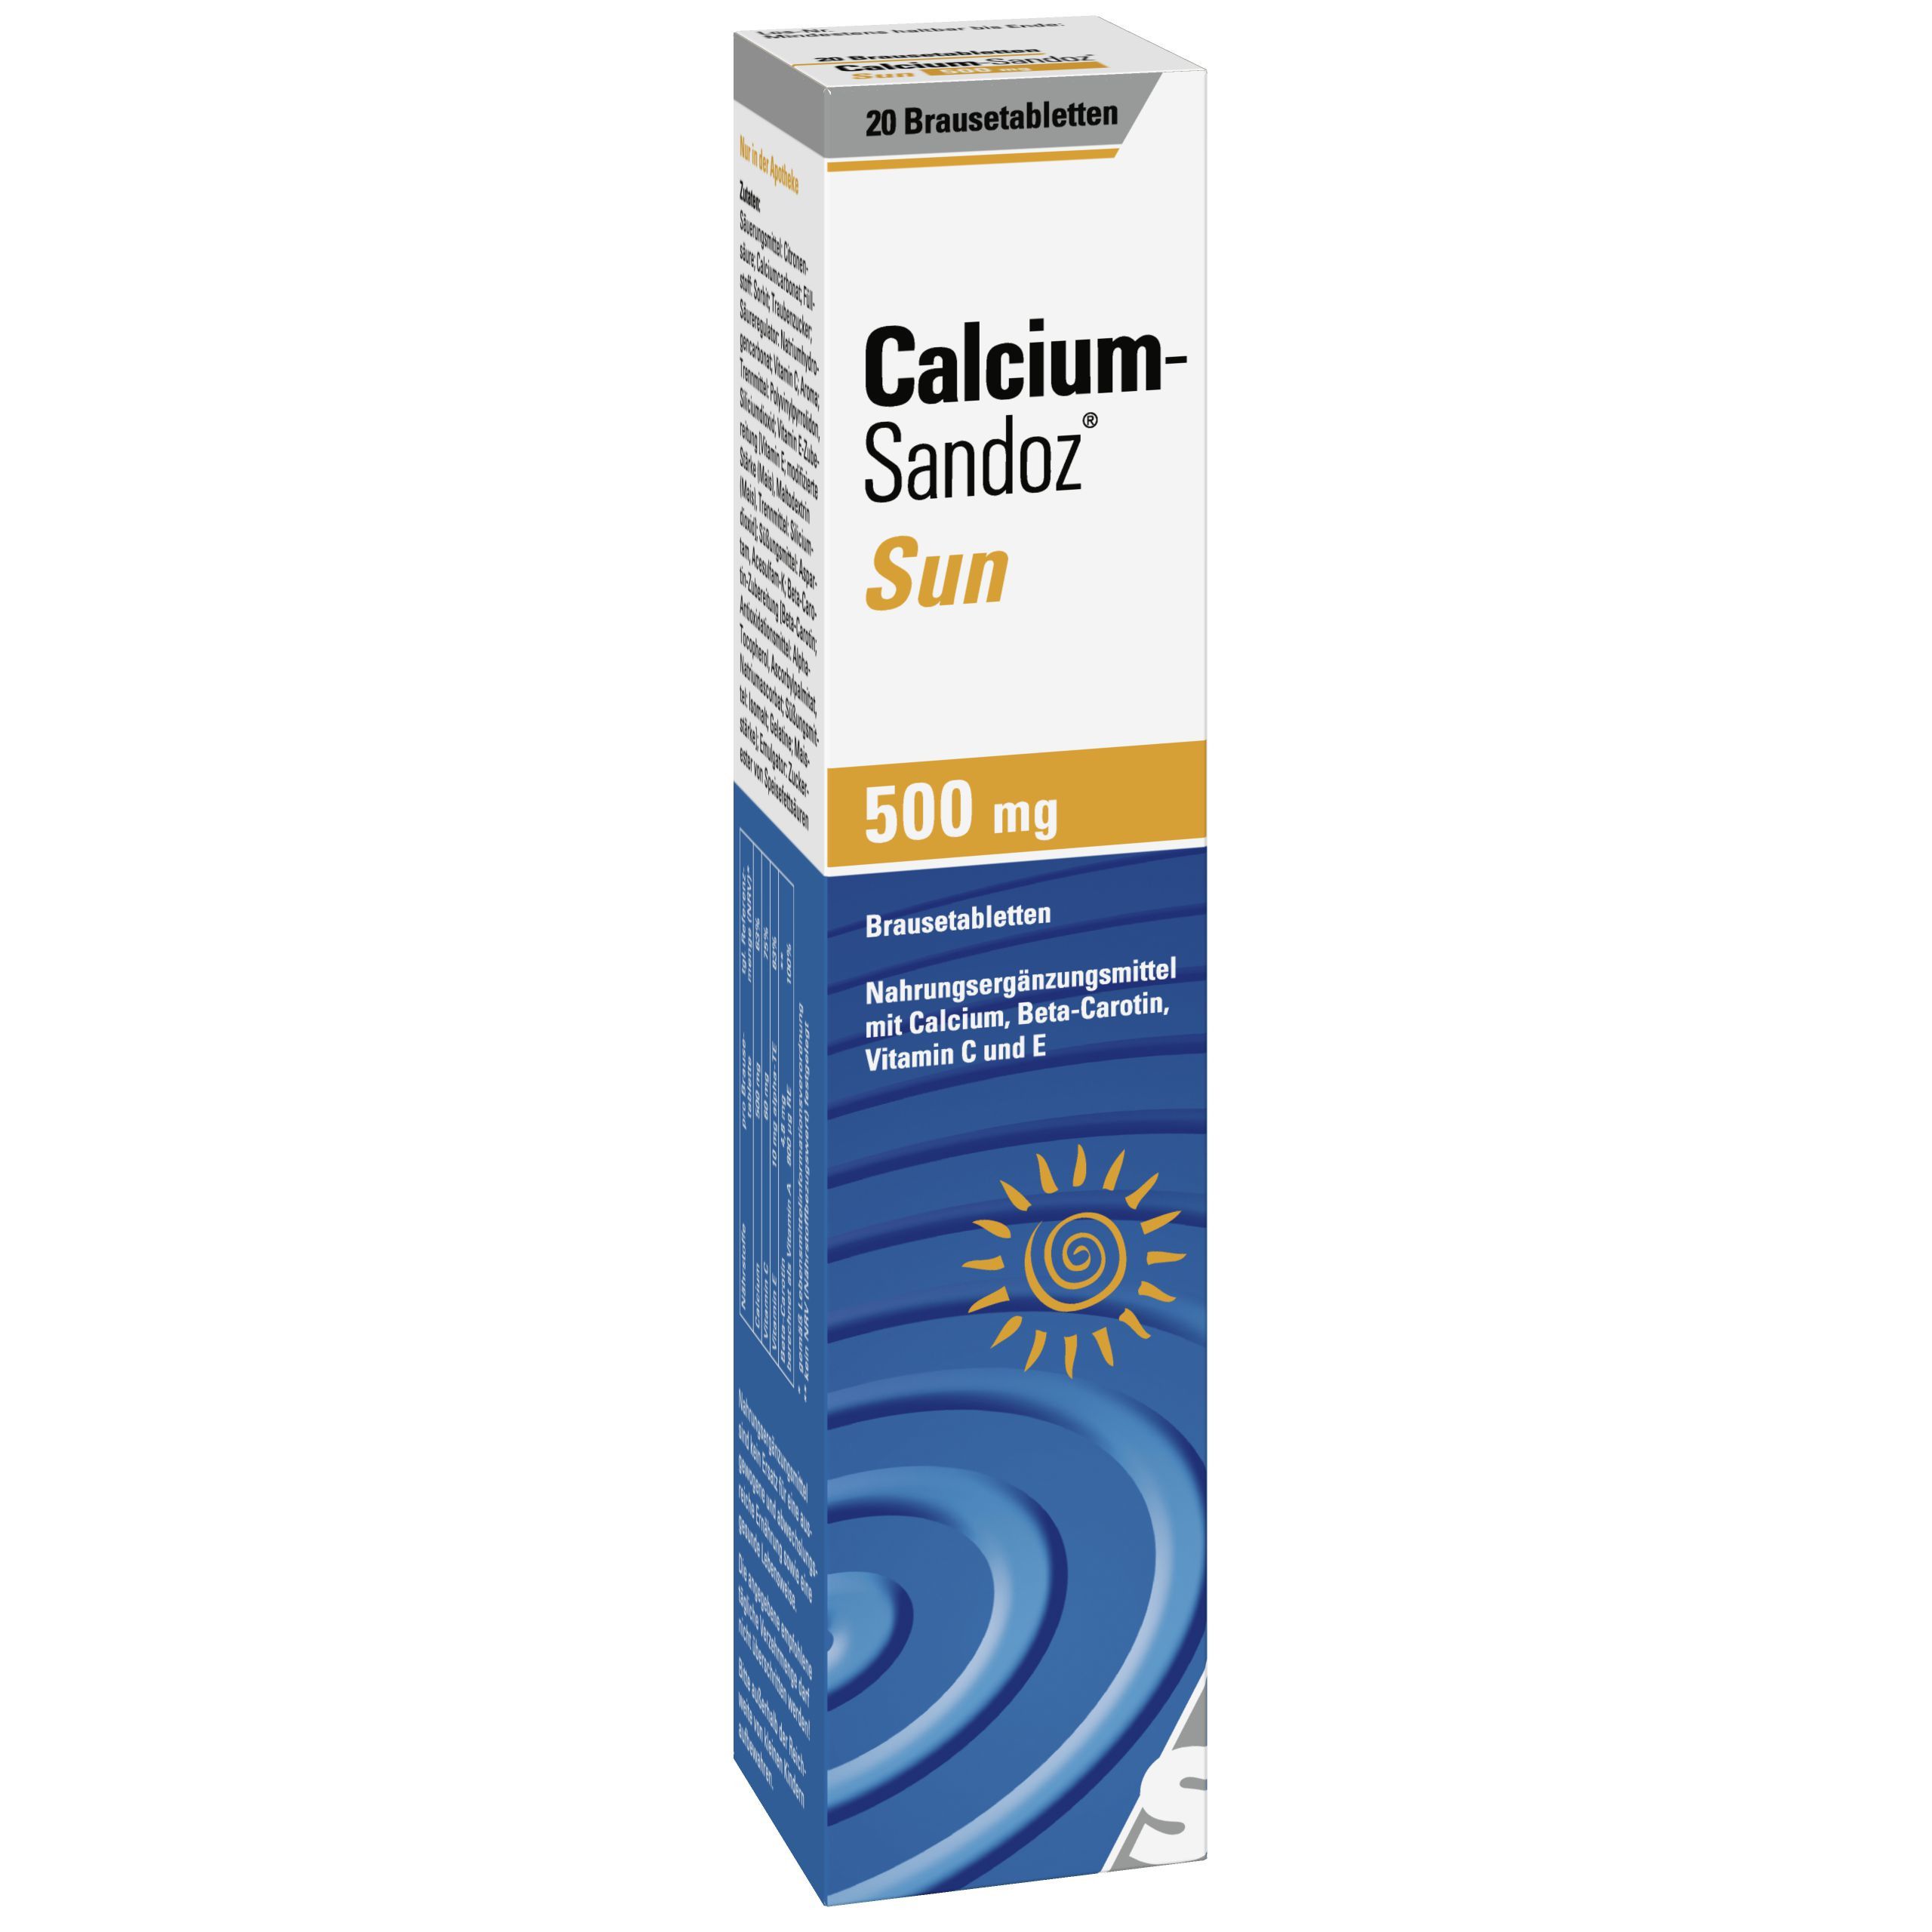 Sandoz® Sun Calcium